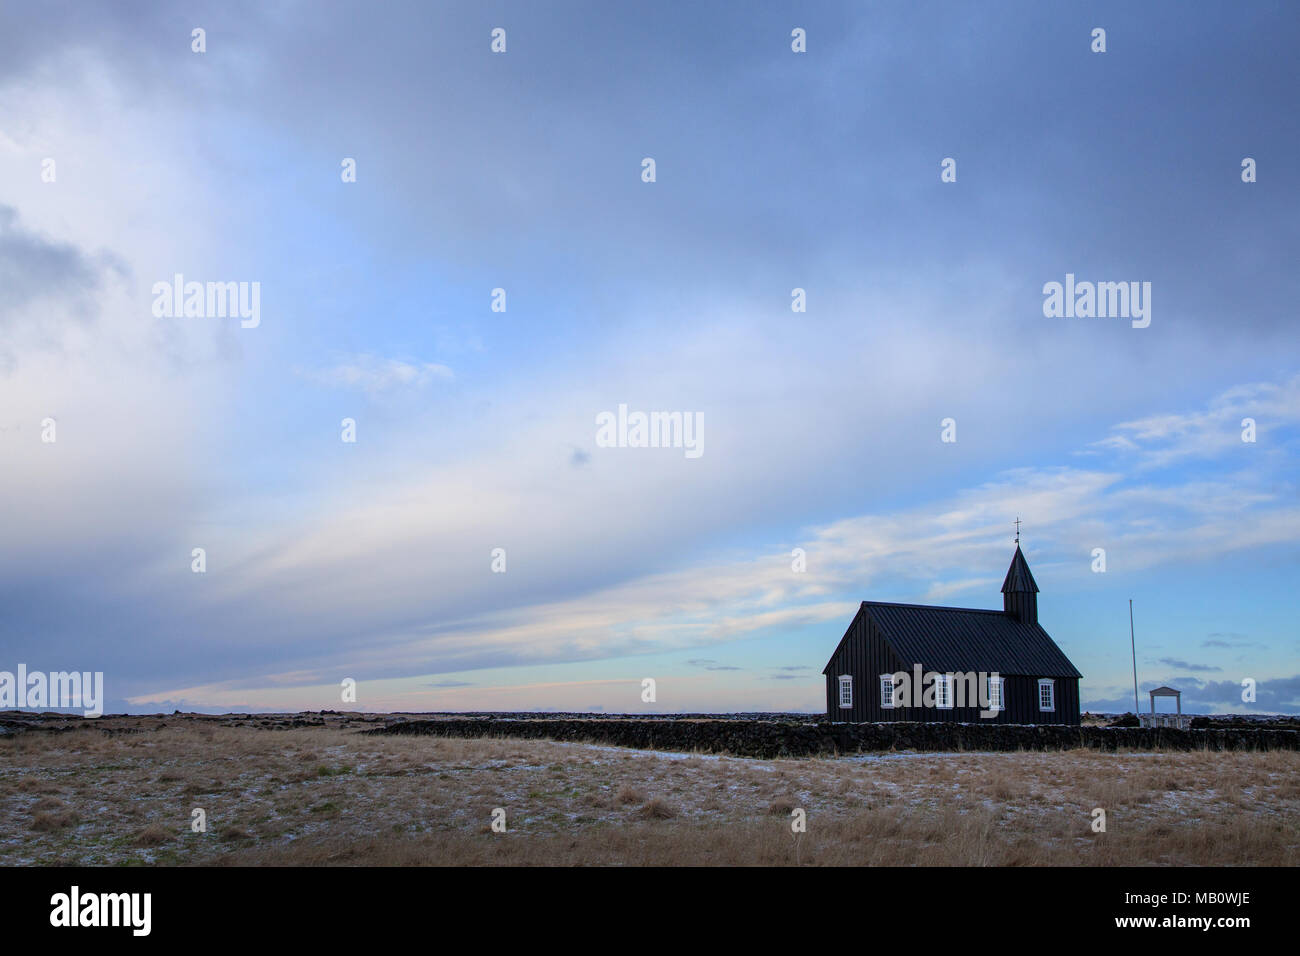 Budir, Europa, Insel, Kirche, Landschaften, Licht Stimmung, Snaefellsnes, Sunrise, Vulkan Insel, winter Stockfoto